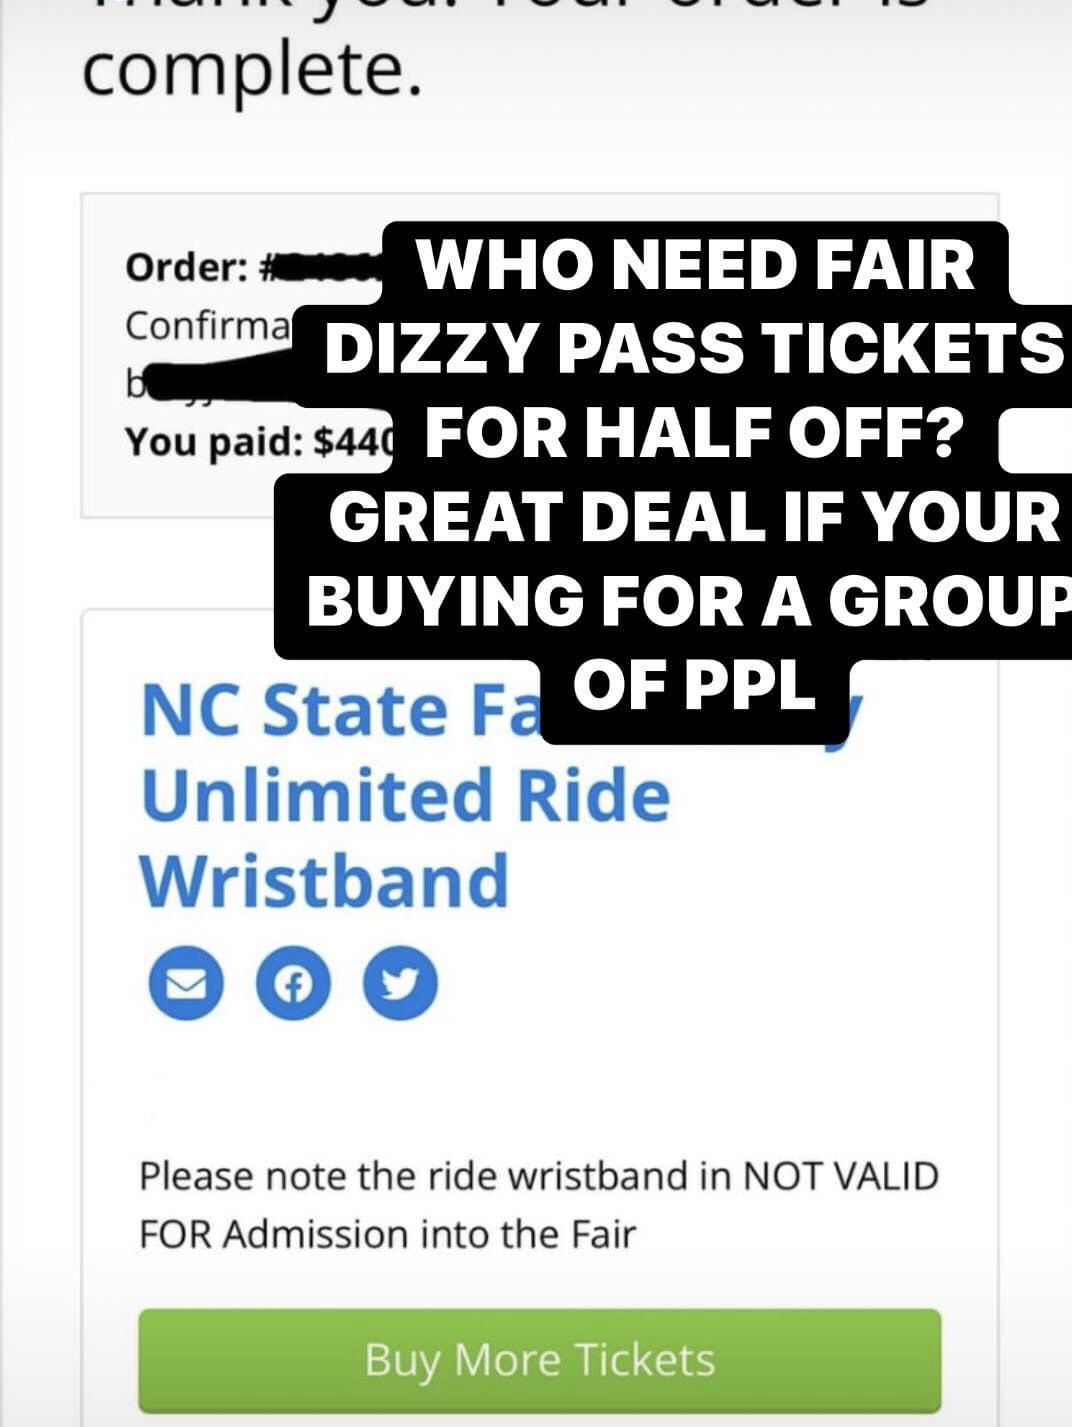 NC State Fair Dizzy Passes